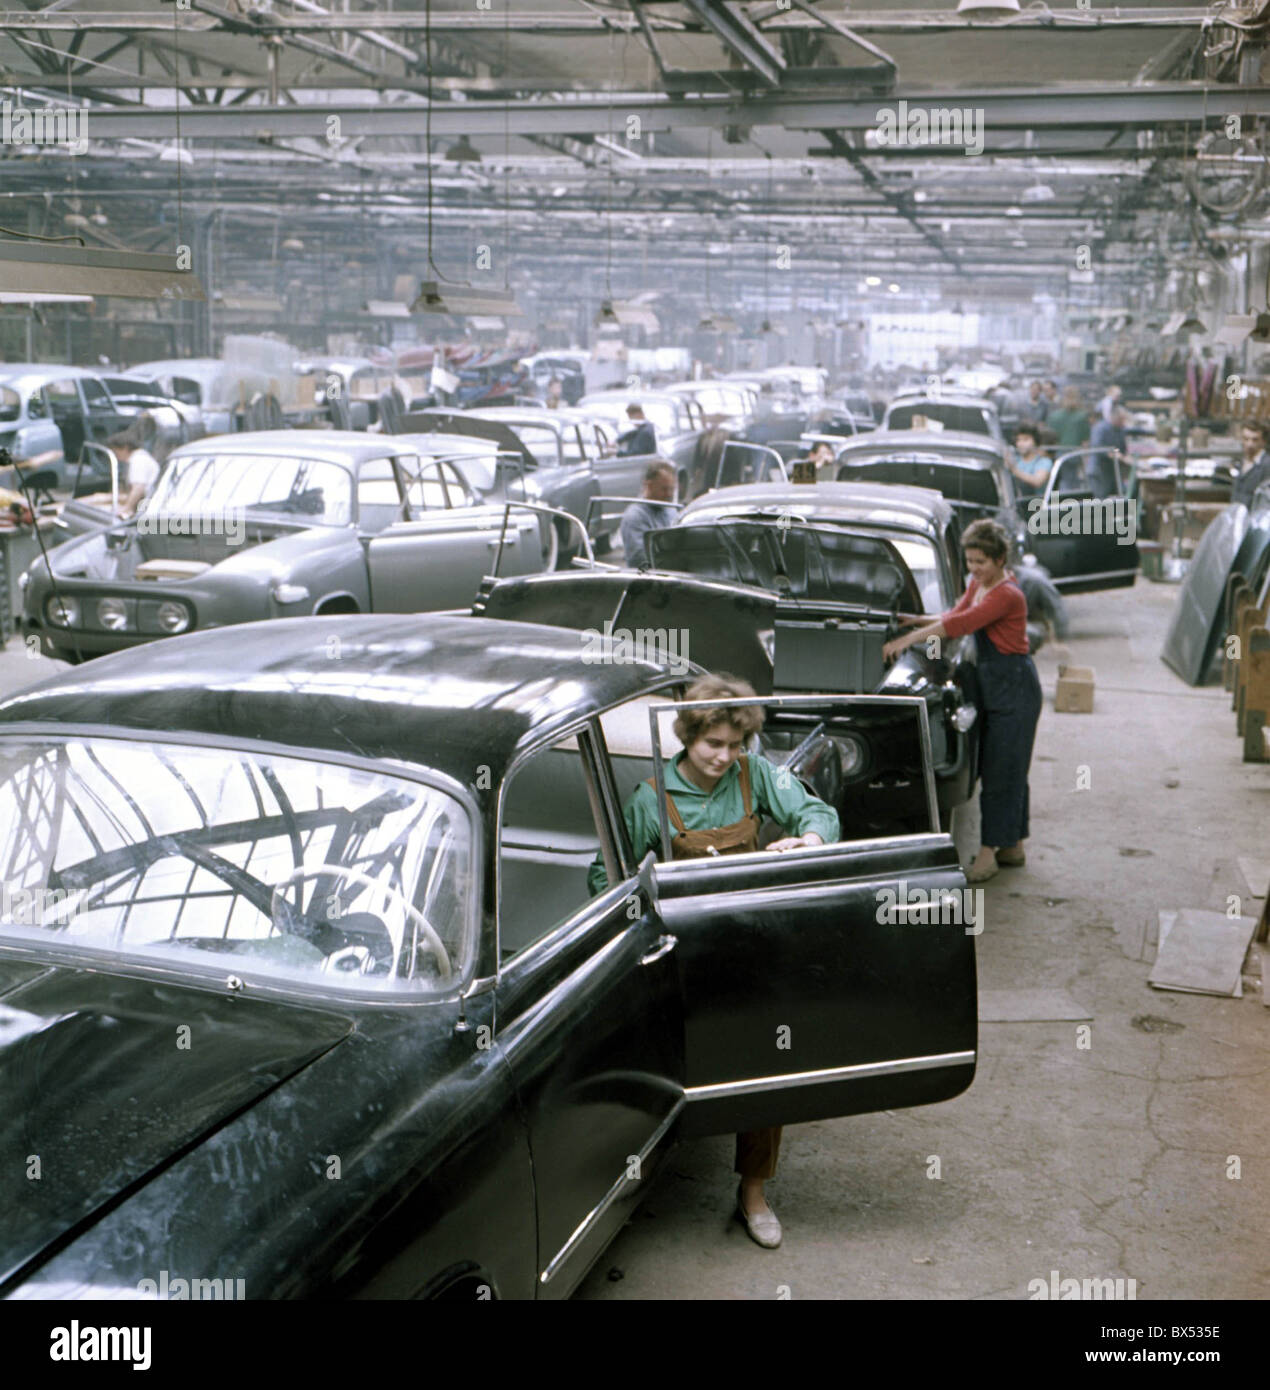 Production of luxury Tatra 603 cars at Tatra Koprivnice factory, October 1962. CTK Photo/Alexandr Hampl Stock Photo